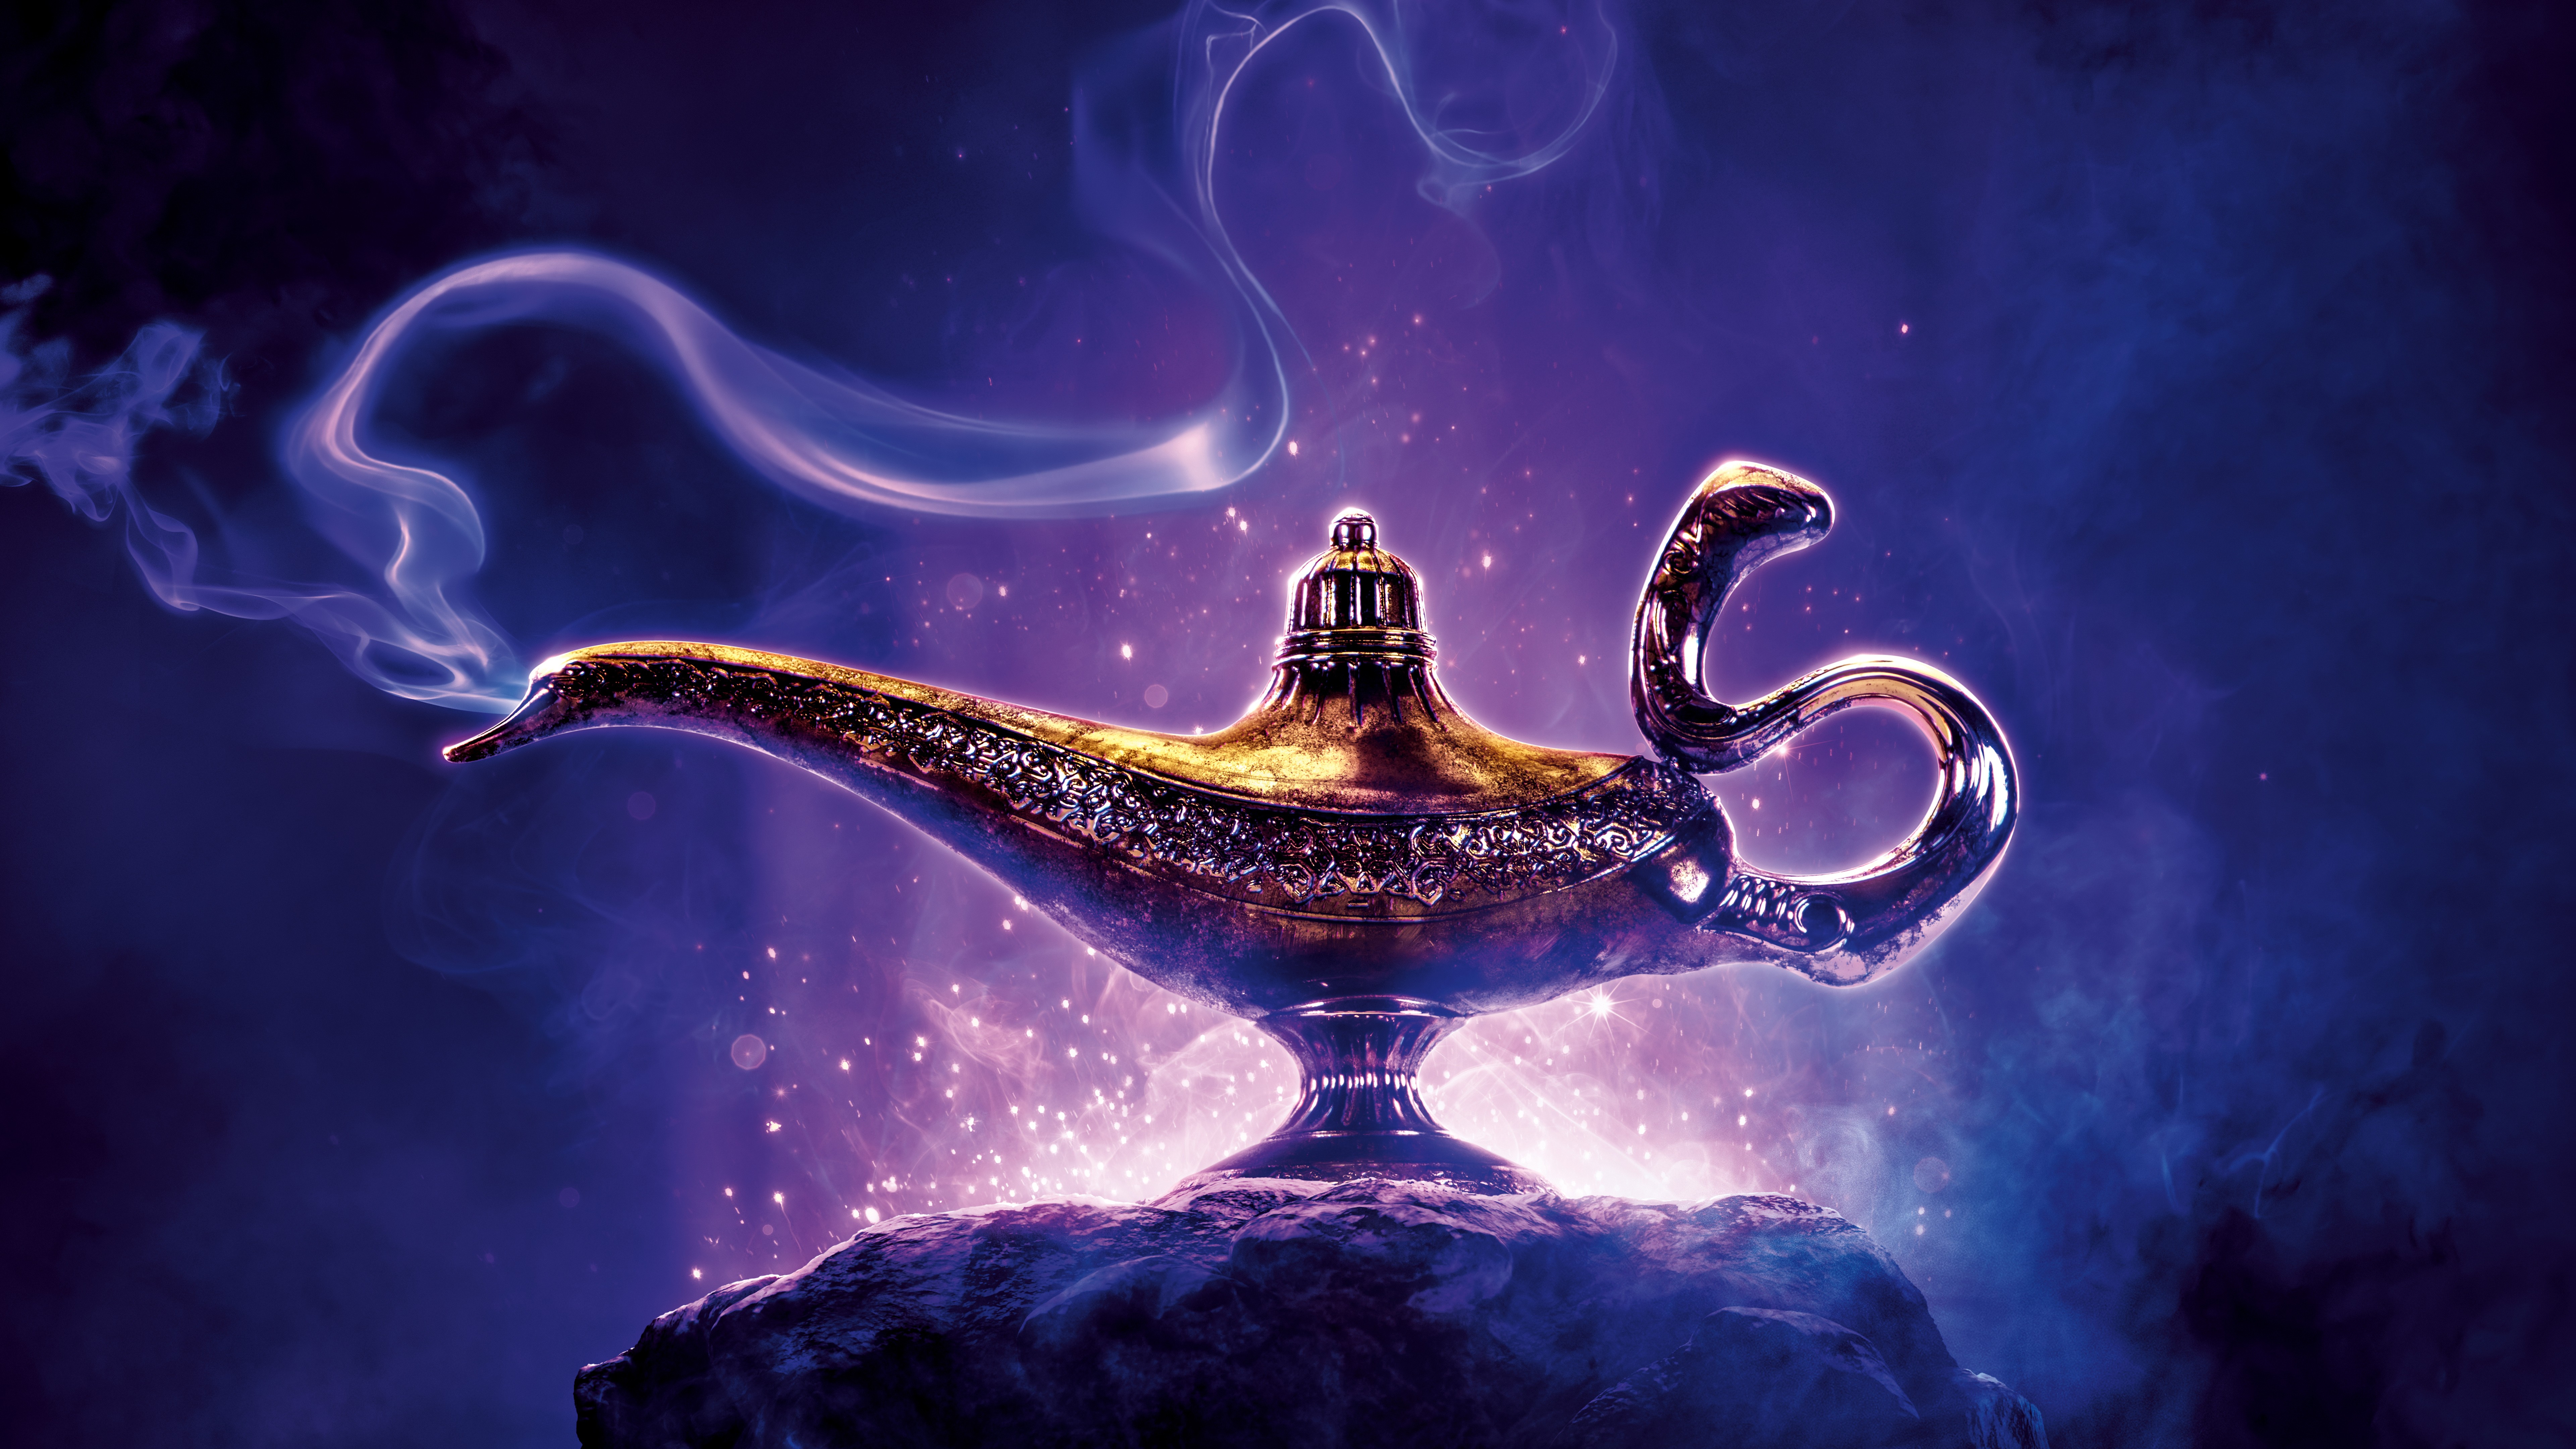 Aladdin 2019 Disney 7680x4320